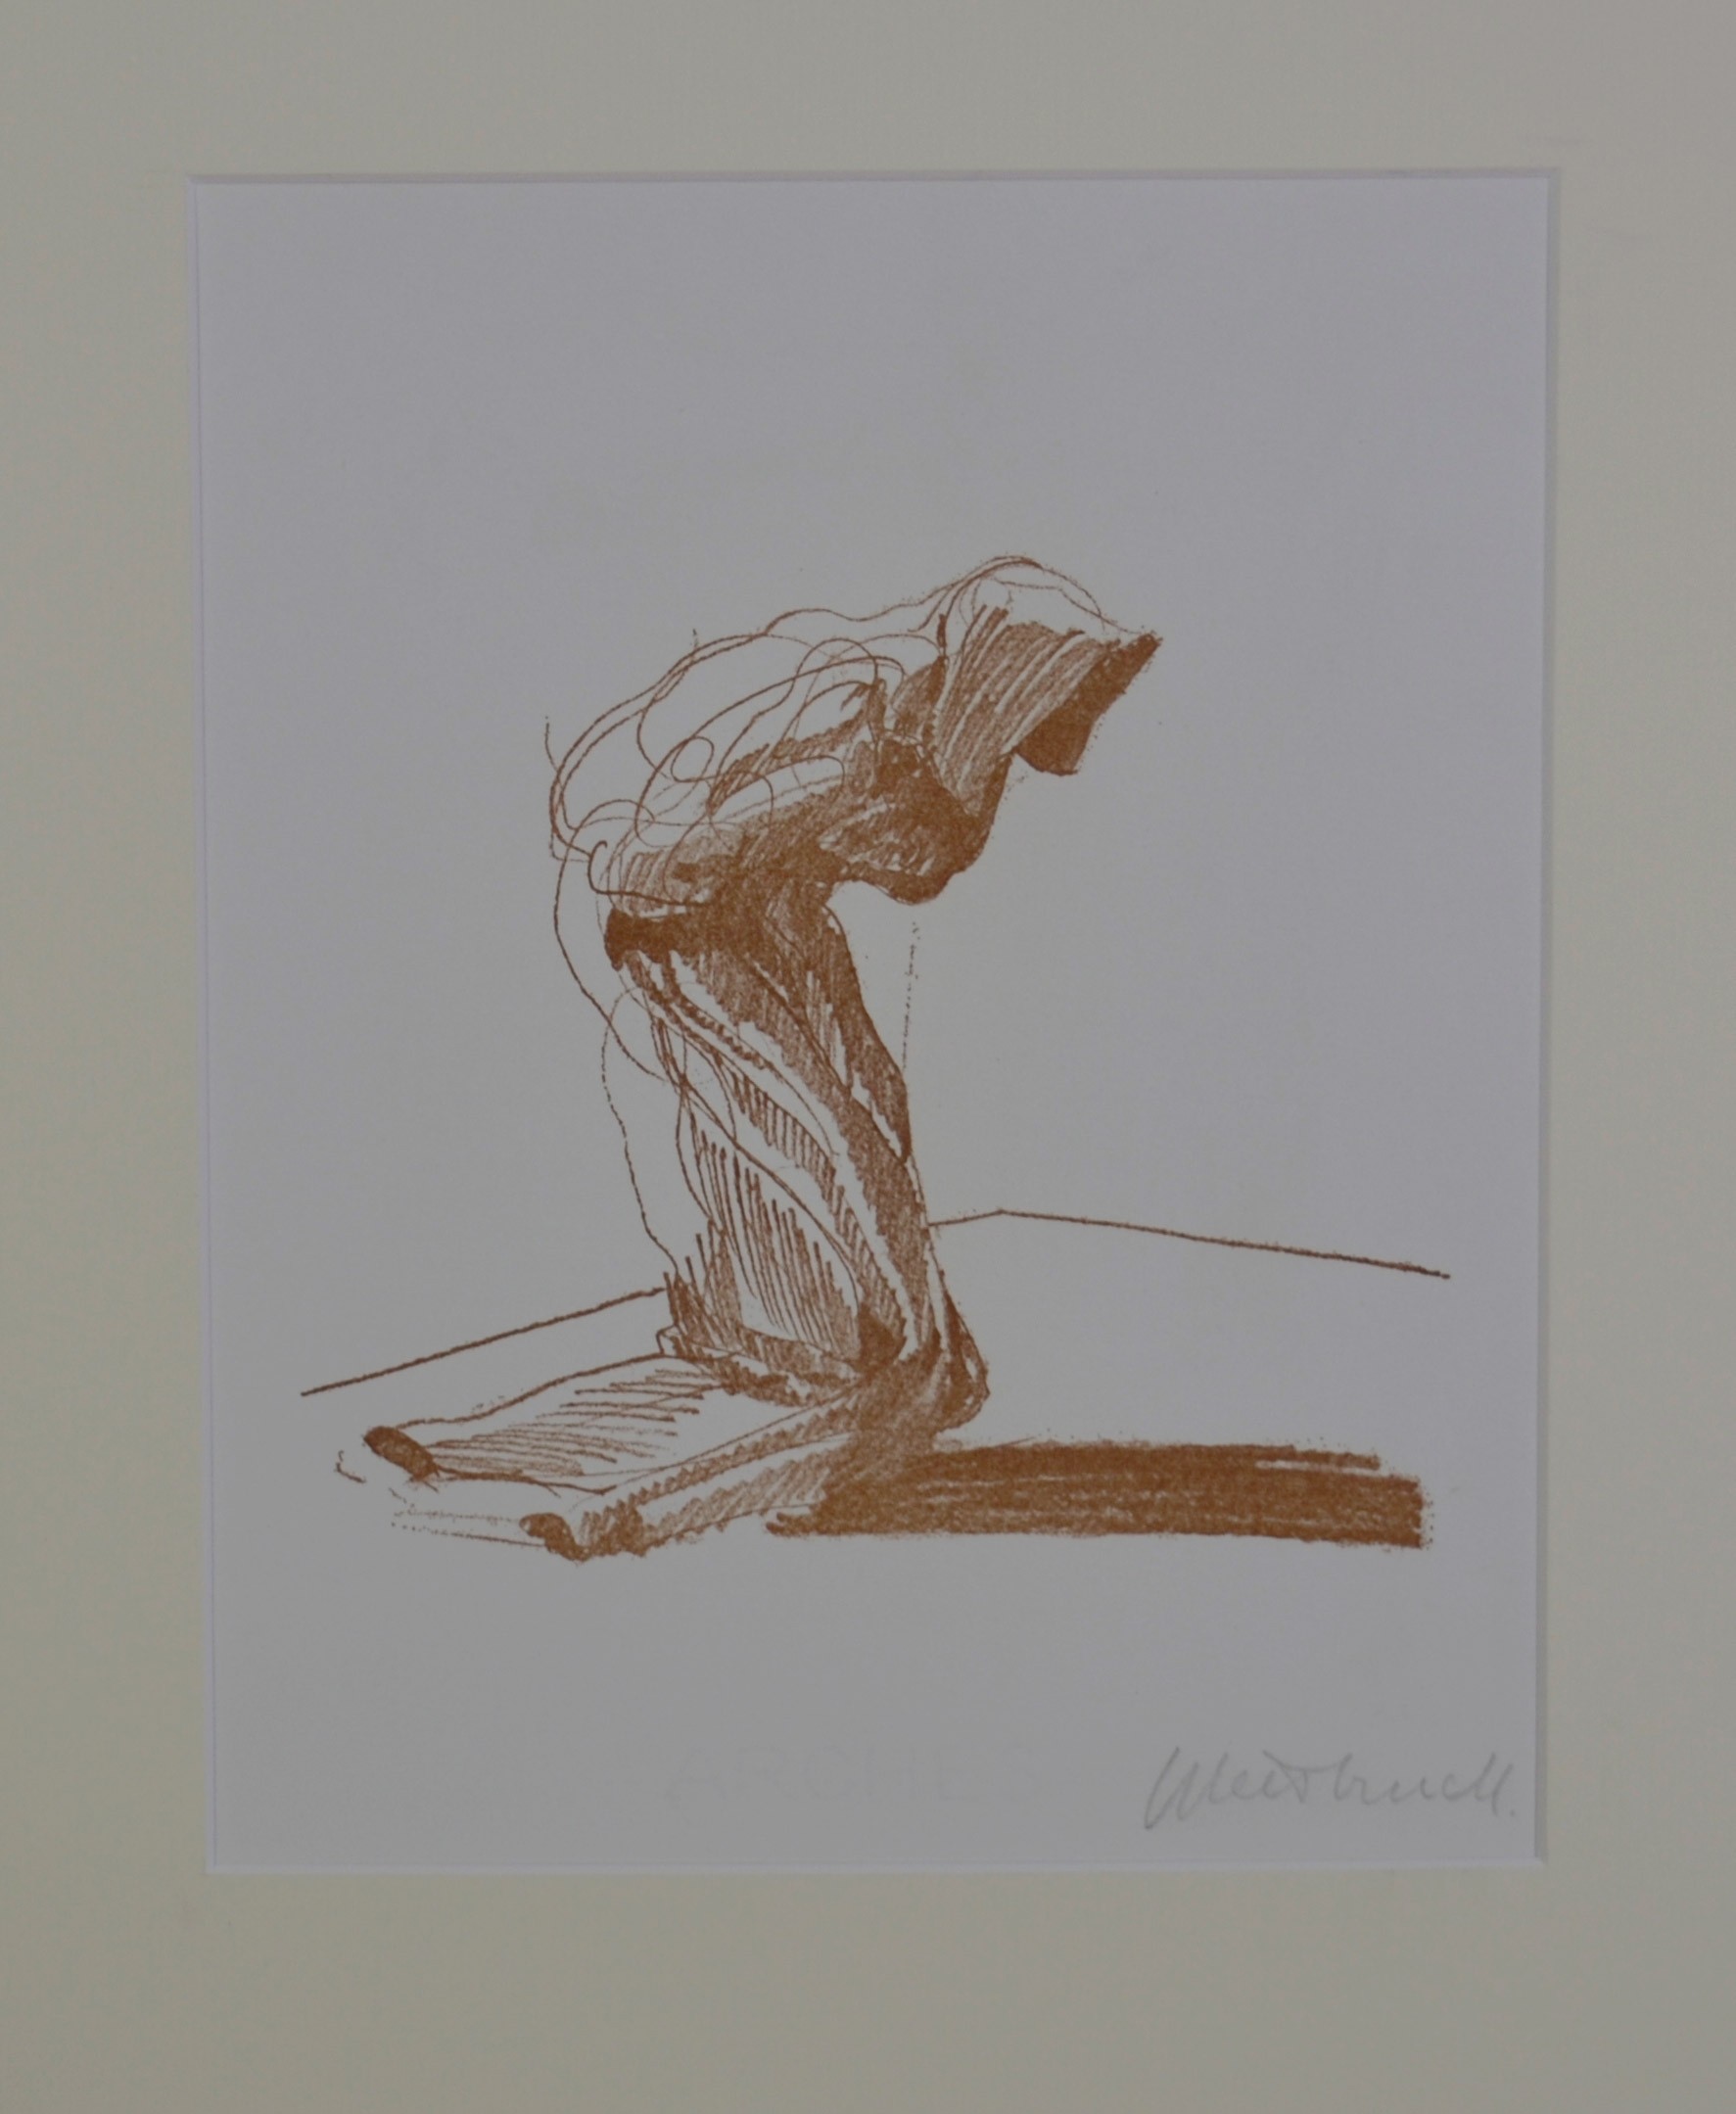 LE REVENANT - WEISBUCH Claude (1927 - ) - Lithographie